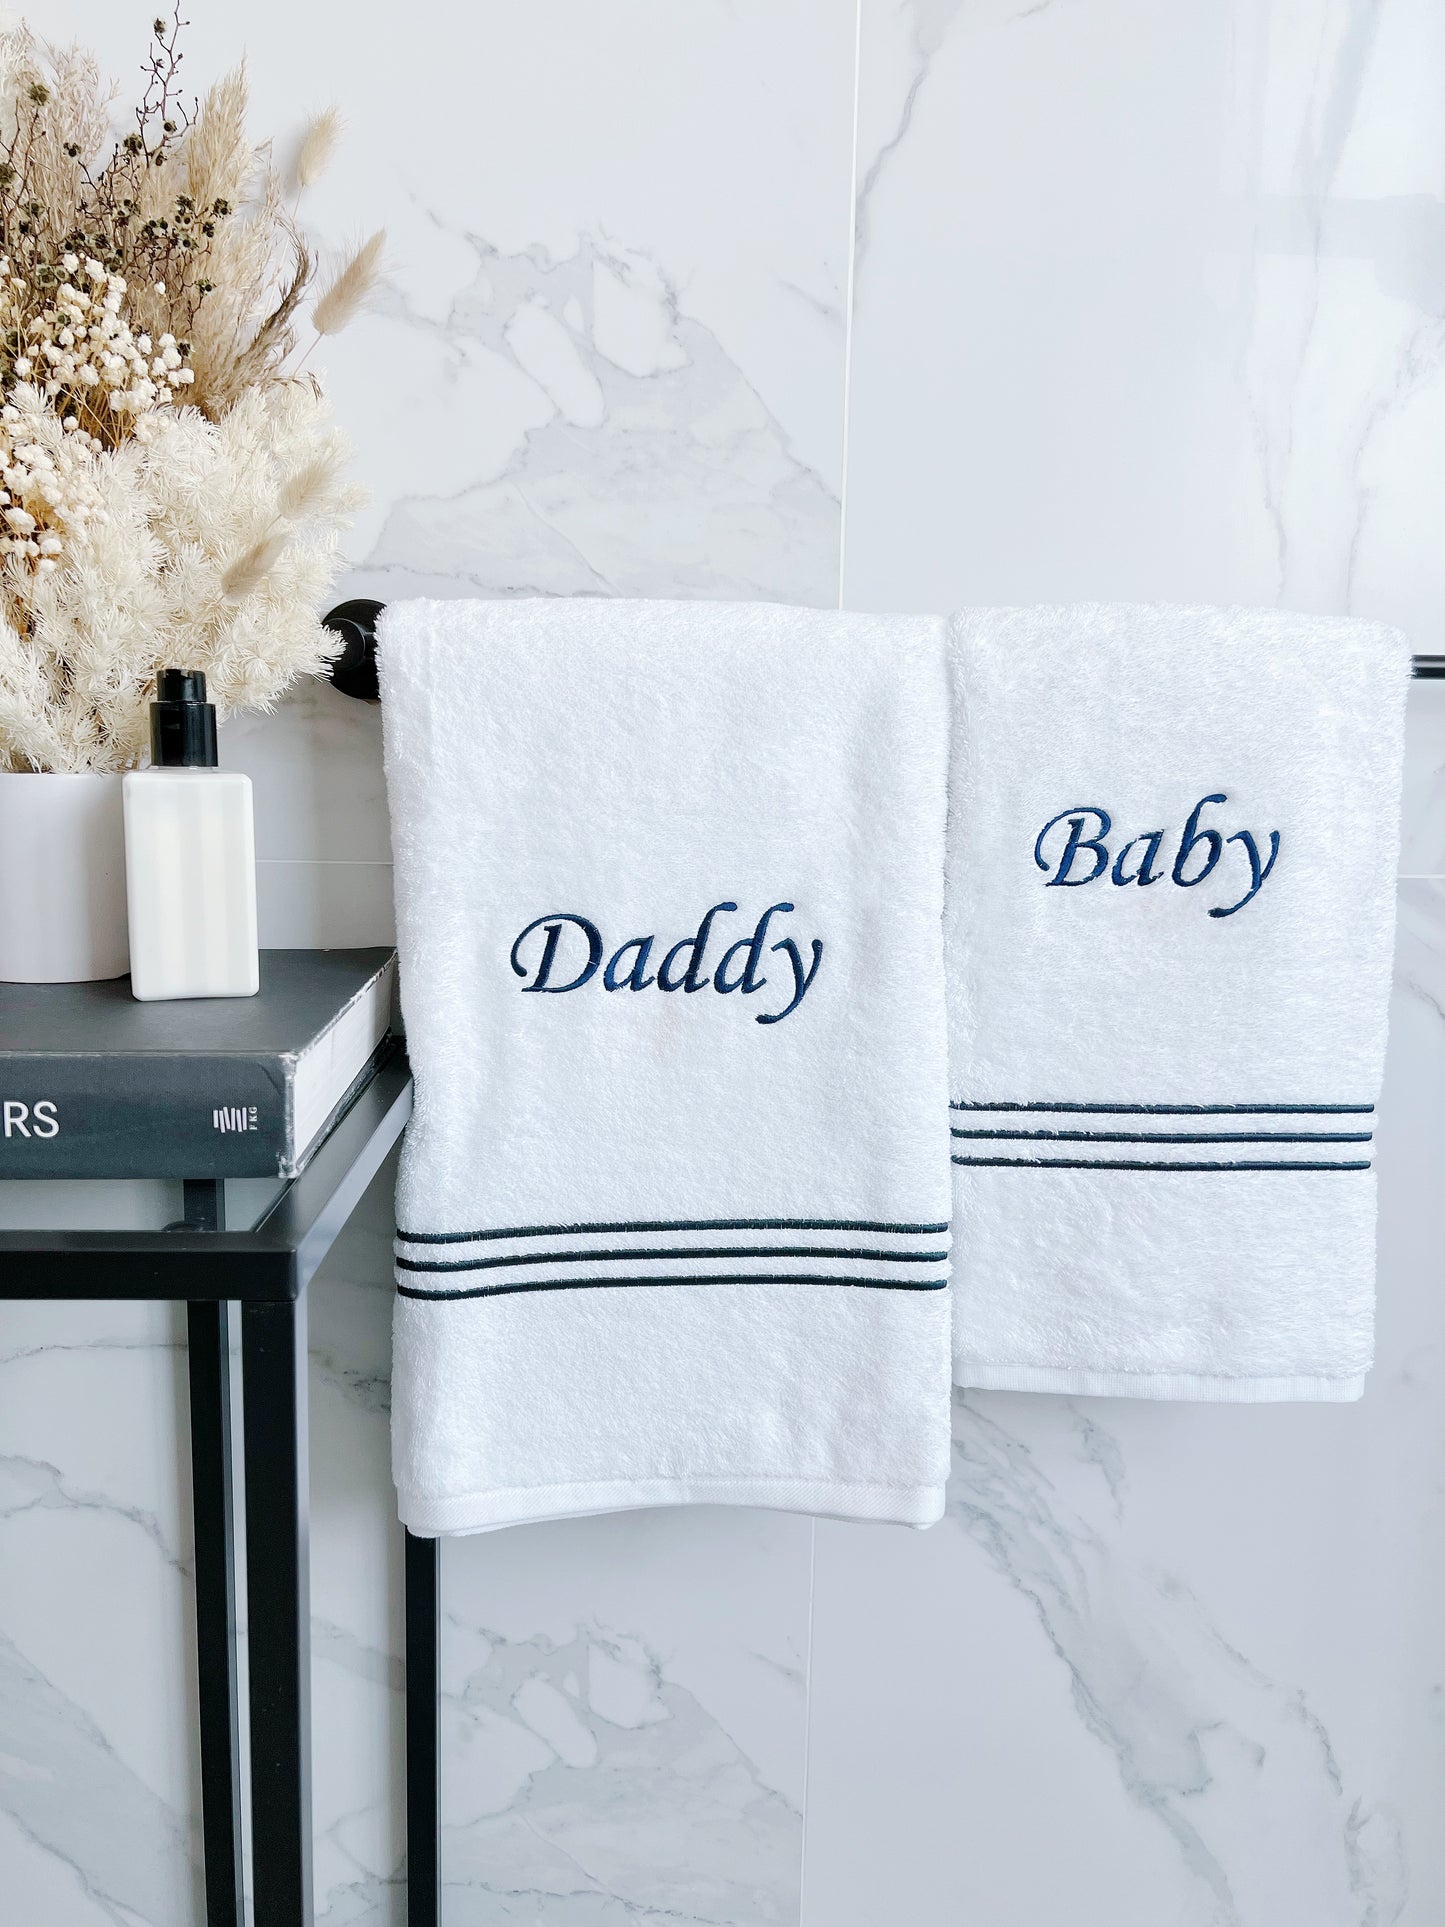 Luxury Signature Bath Towel Set (1 Adult Towel + 1 Kids Towel)